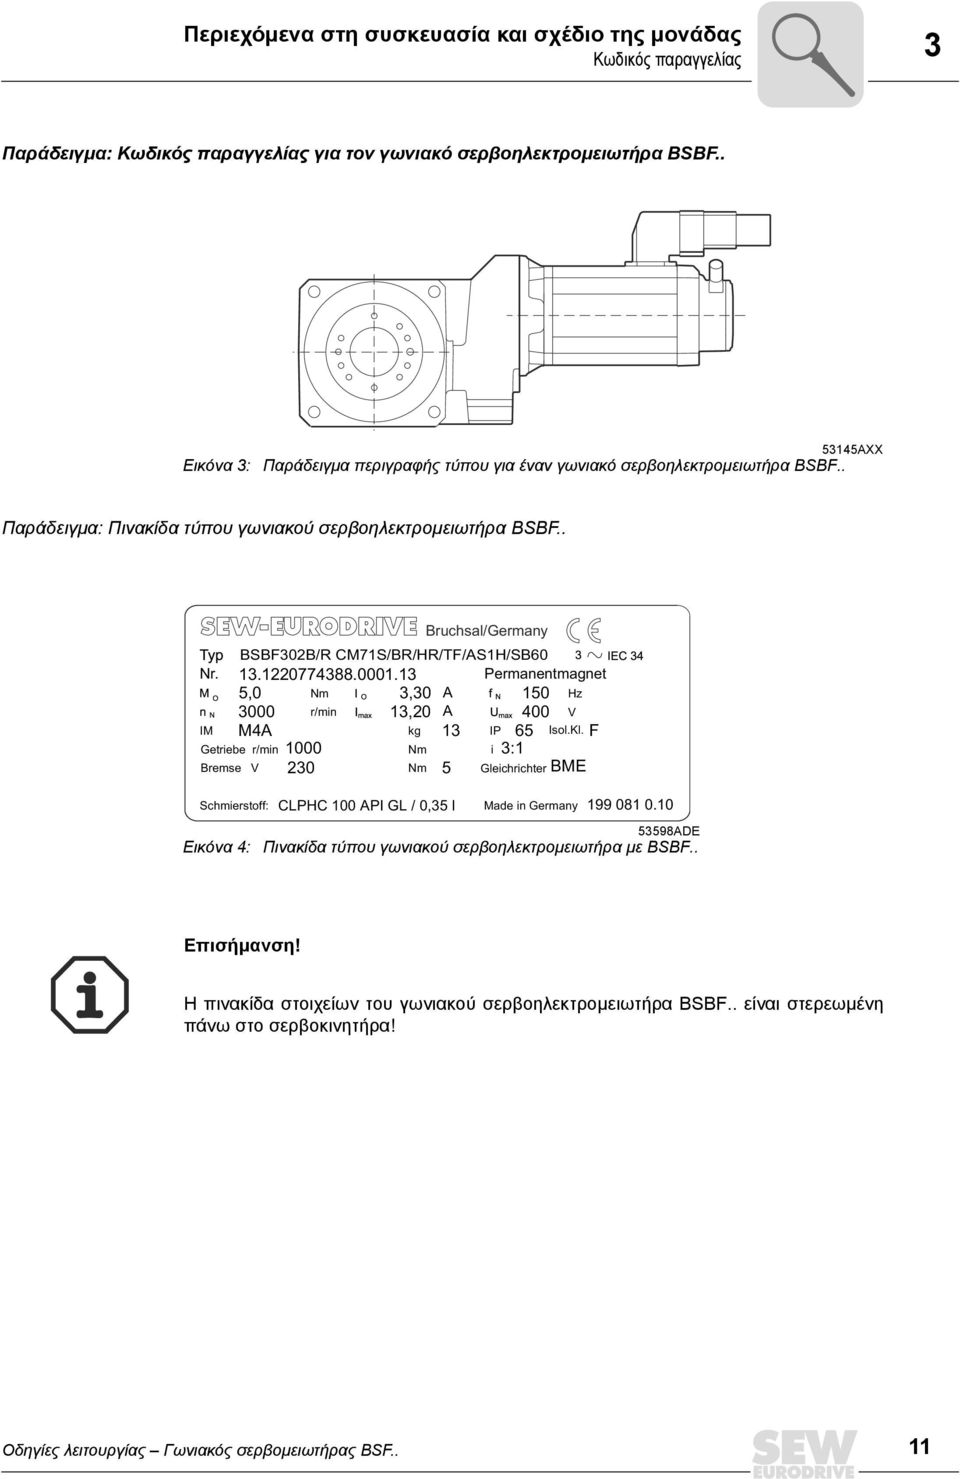 . Schmierstoff: CLPHC 100 API GL / 0,35 l Made in Germany 199 081 0.10 Εικόνα 4: Bruchsal/Germany BSBF302B/R CM71S/BR/HR/TF/AS1H/SB60 13.1220774388.0001.